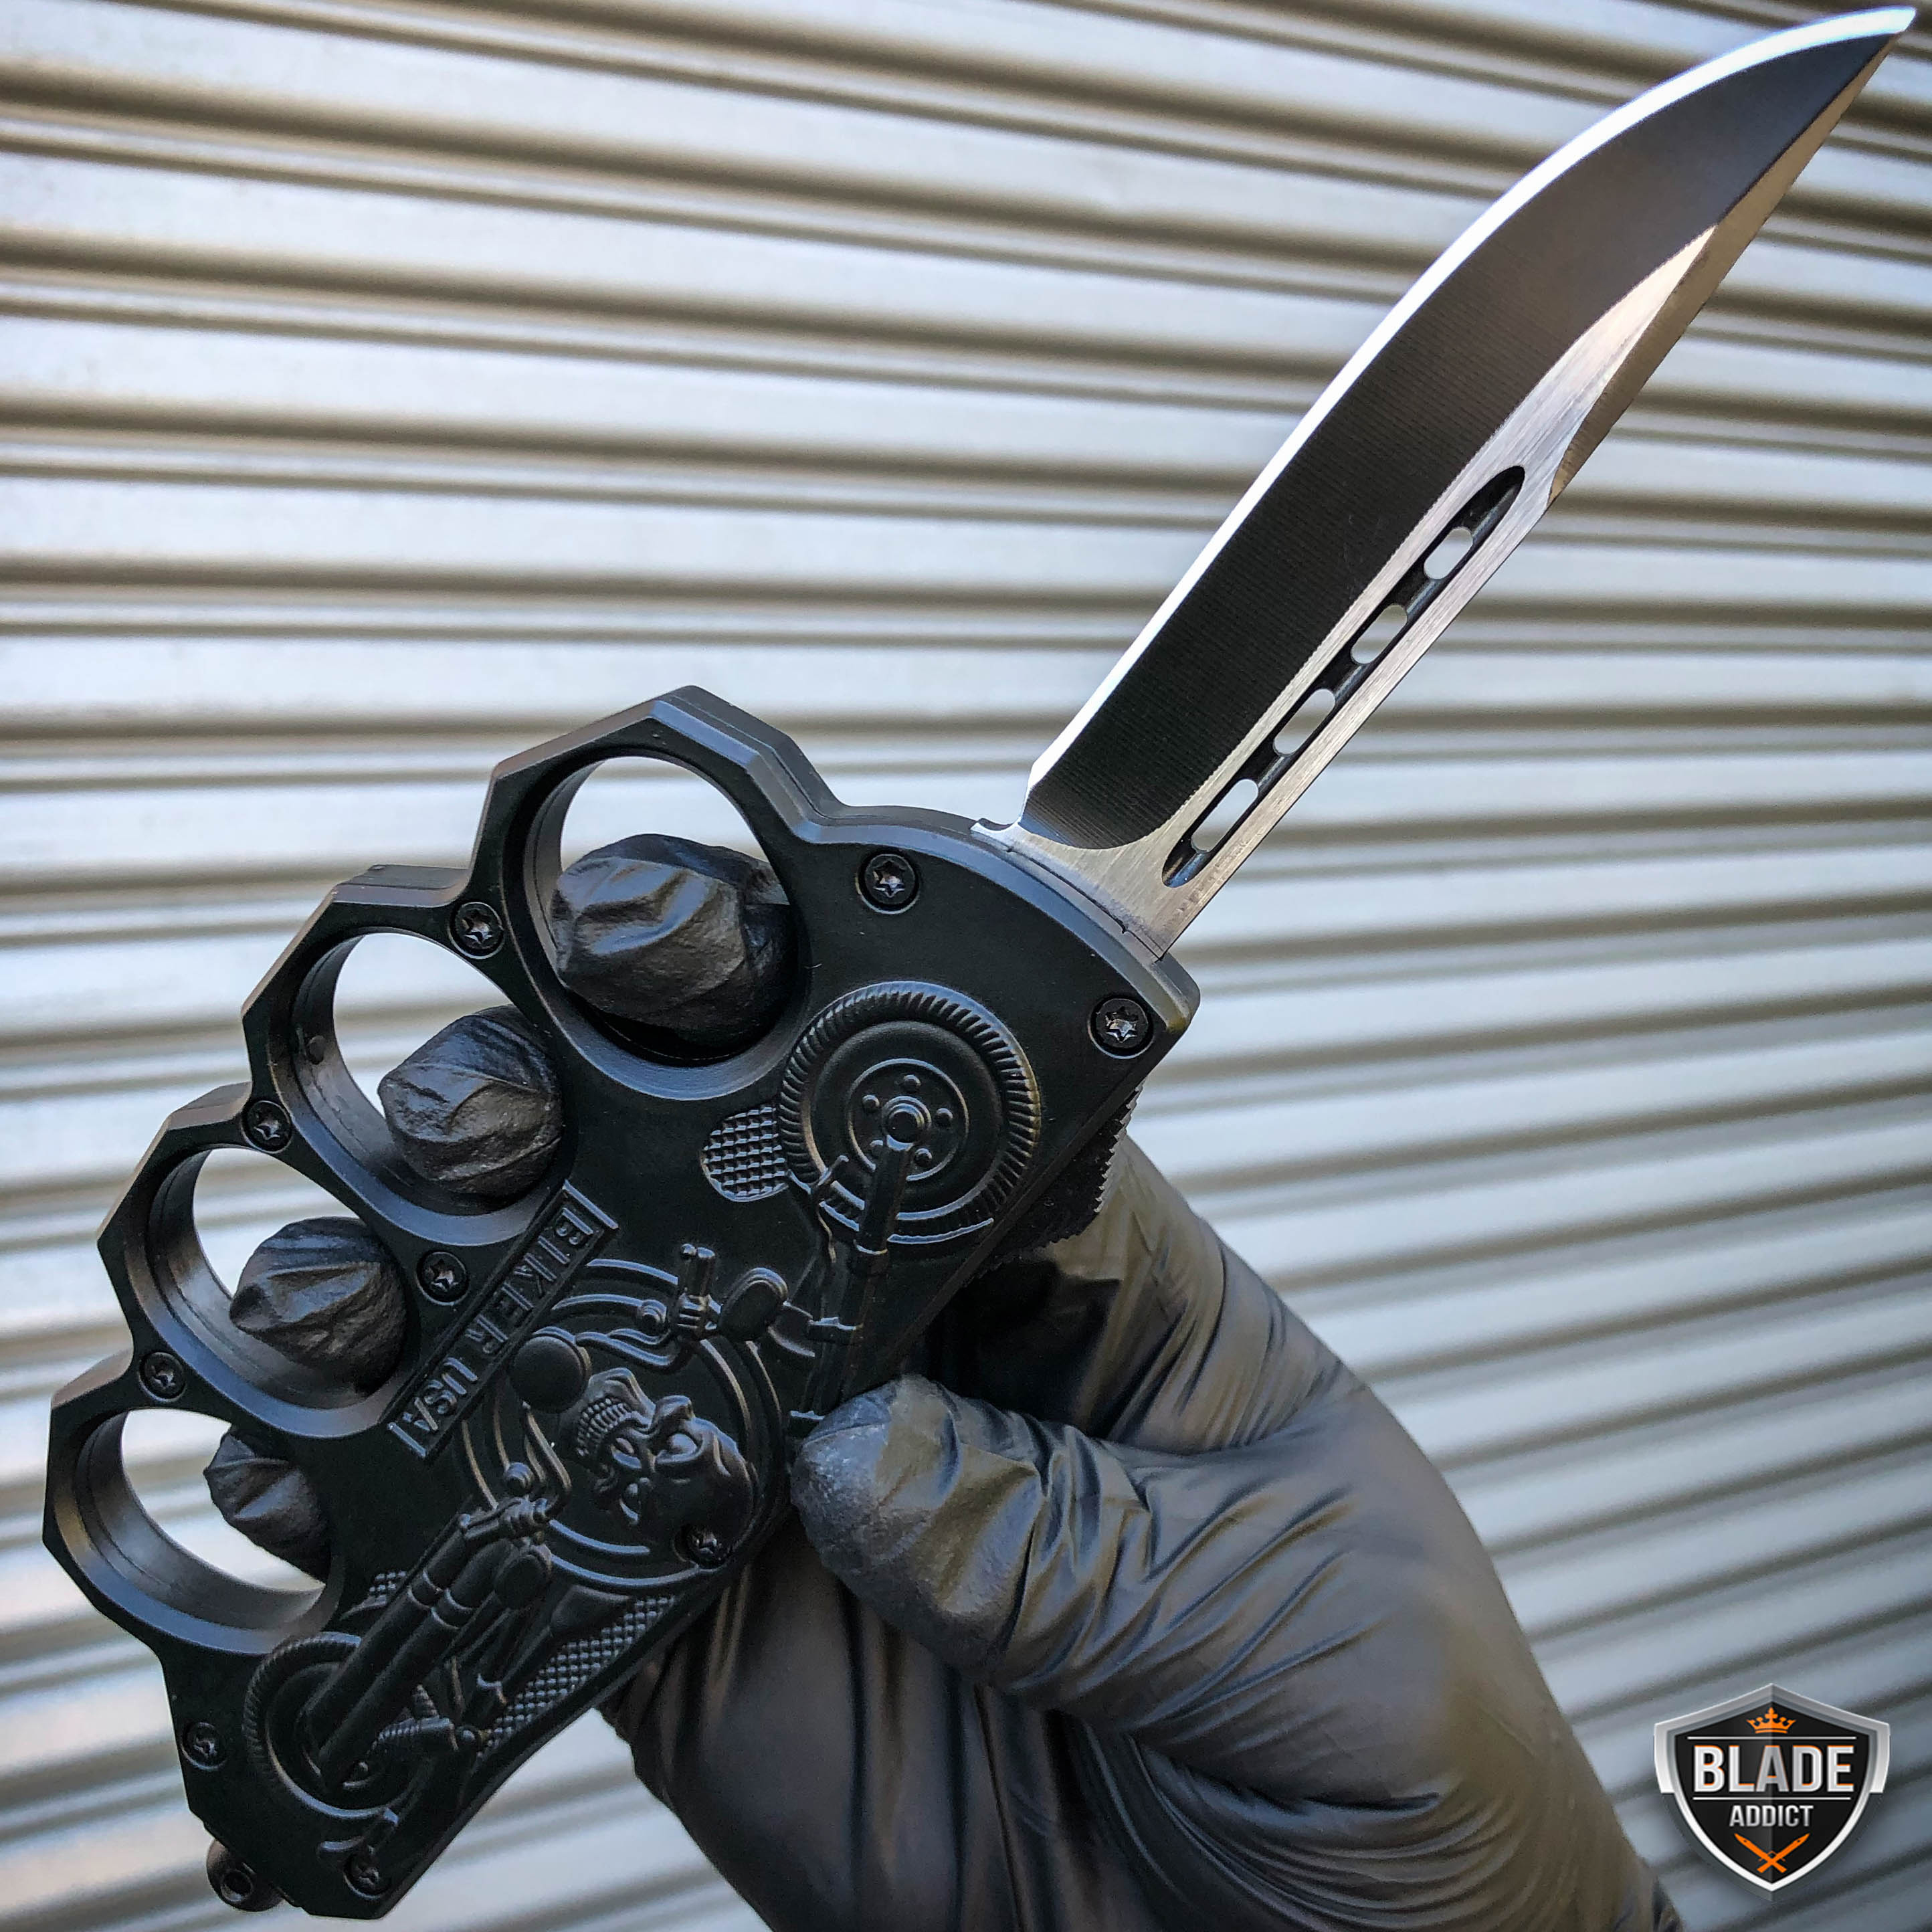 Punisher OTF Dual Action Knife For Sale - MEGAKNIFE